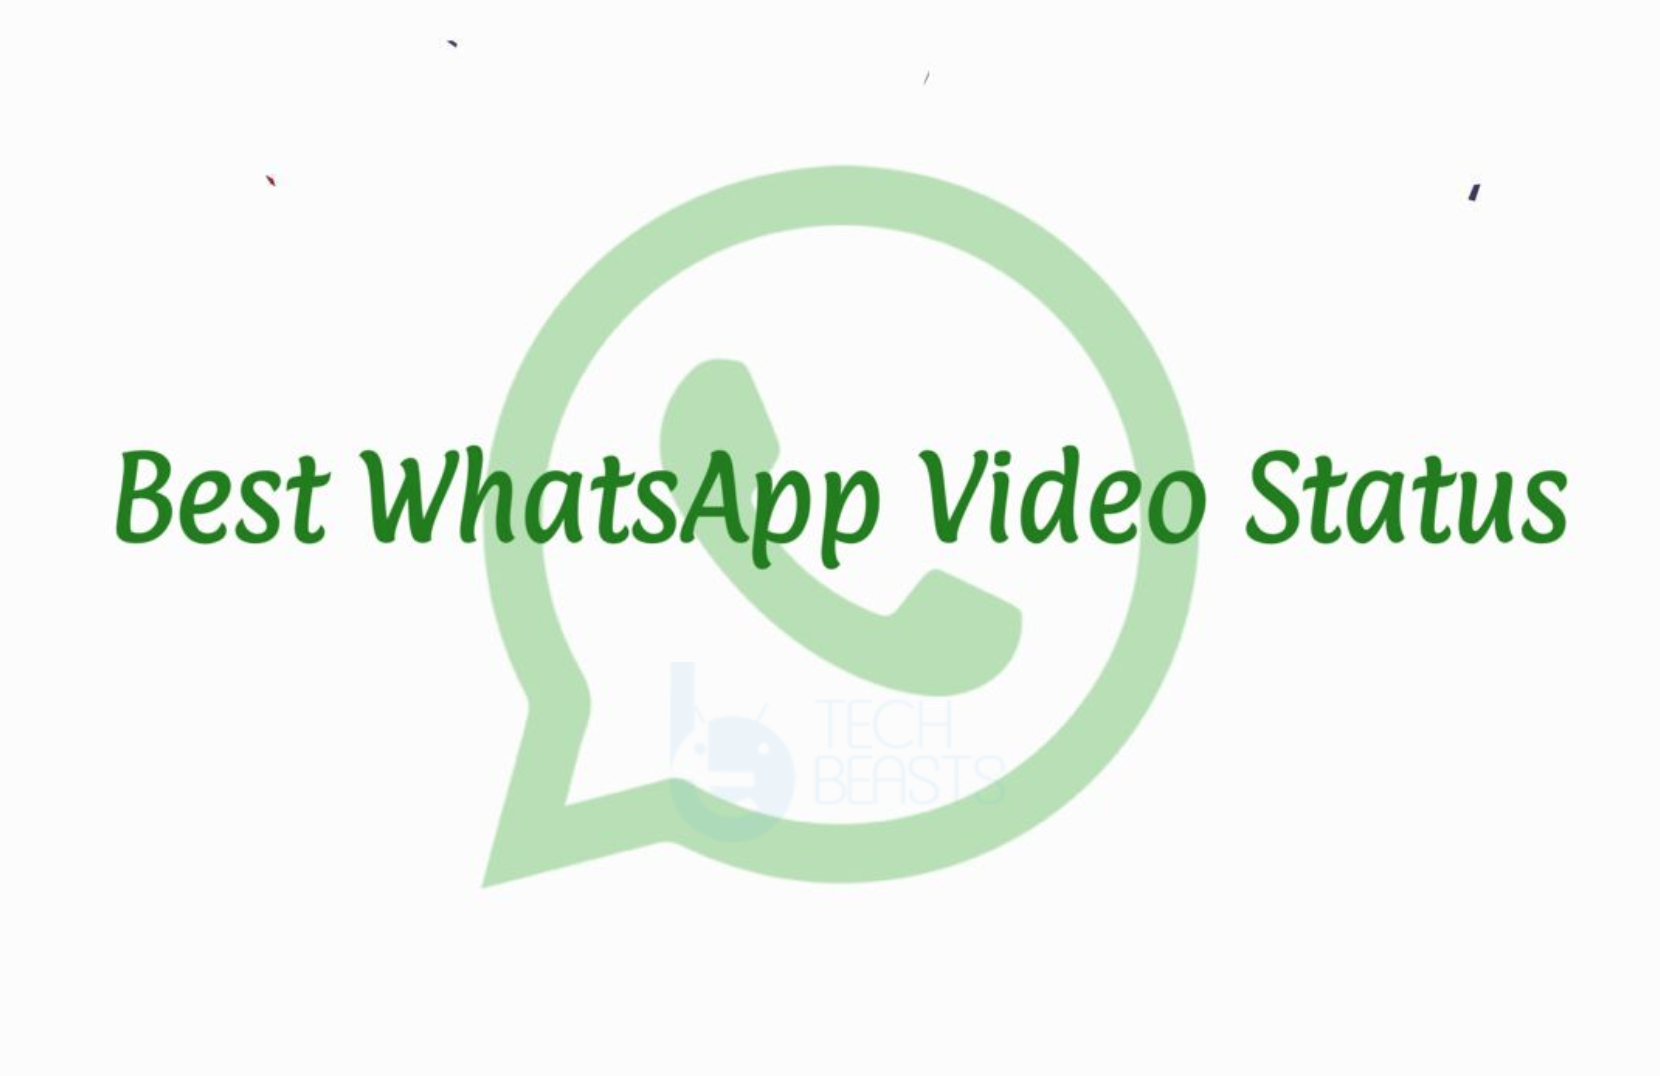 Best WhatsApp Video Status